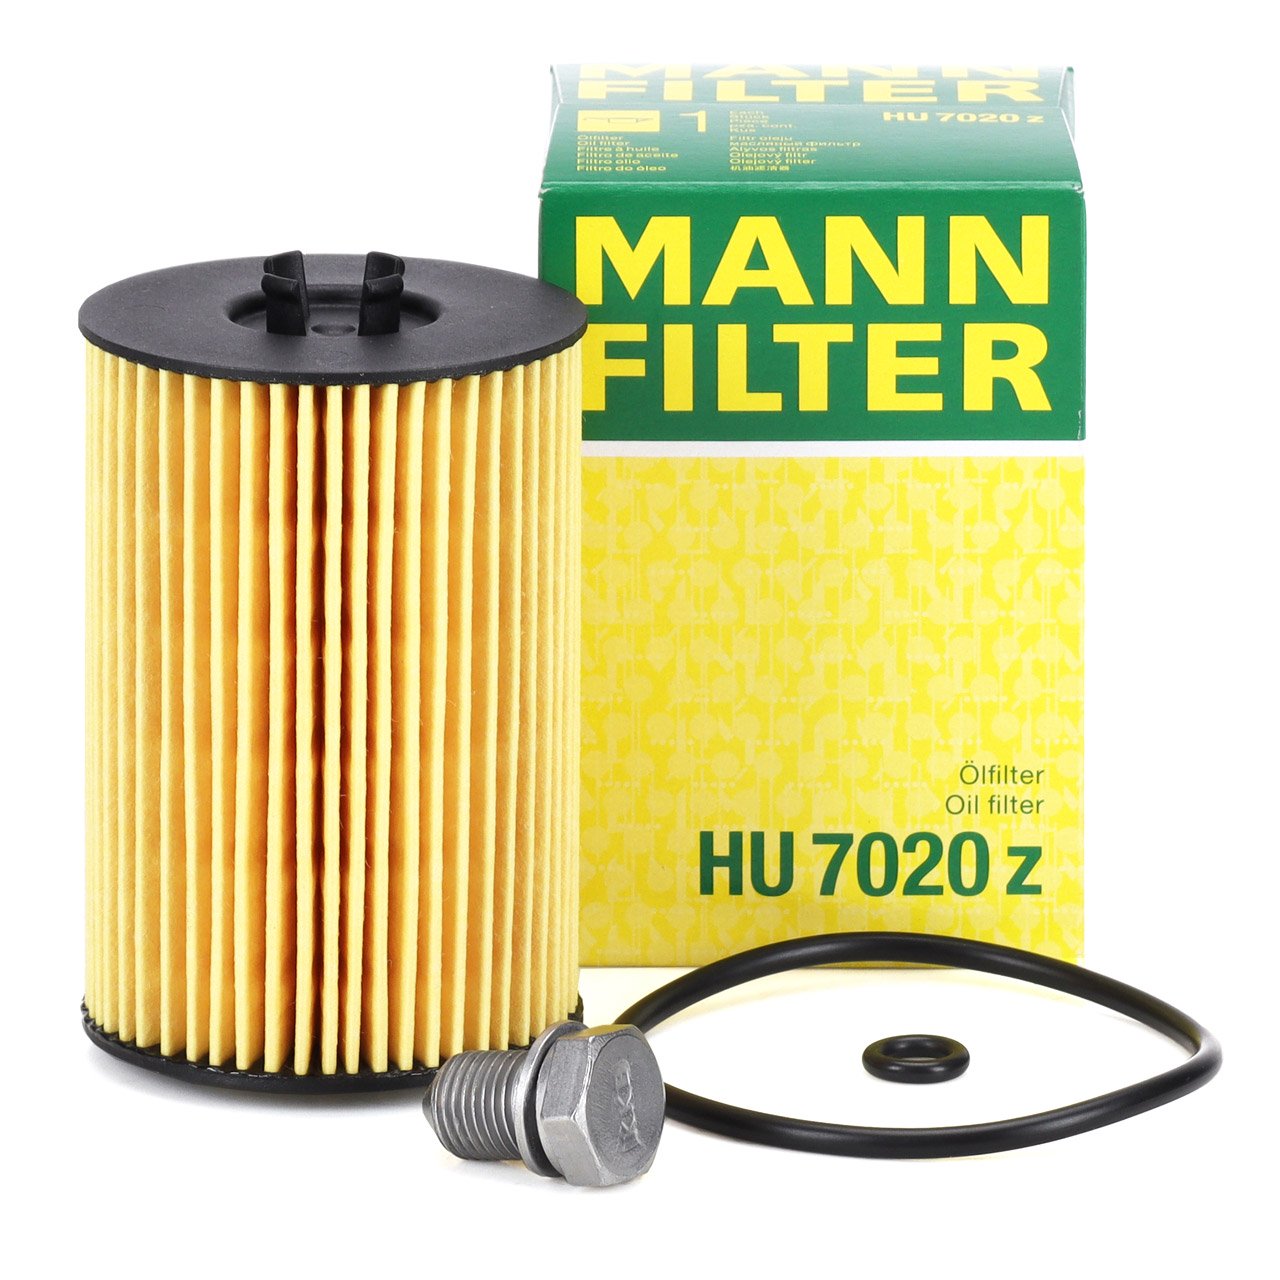 Filter und Werkzeug für Ölwechsel an allen 1.9/2.0 TDI Motoren mit  Filterpatrone